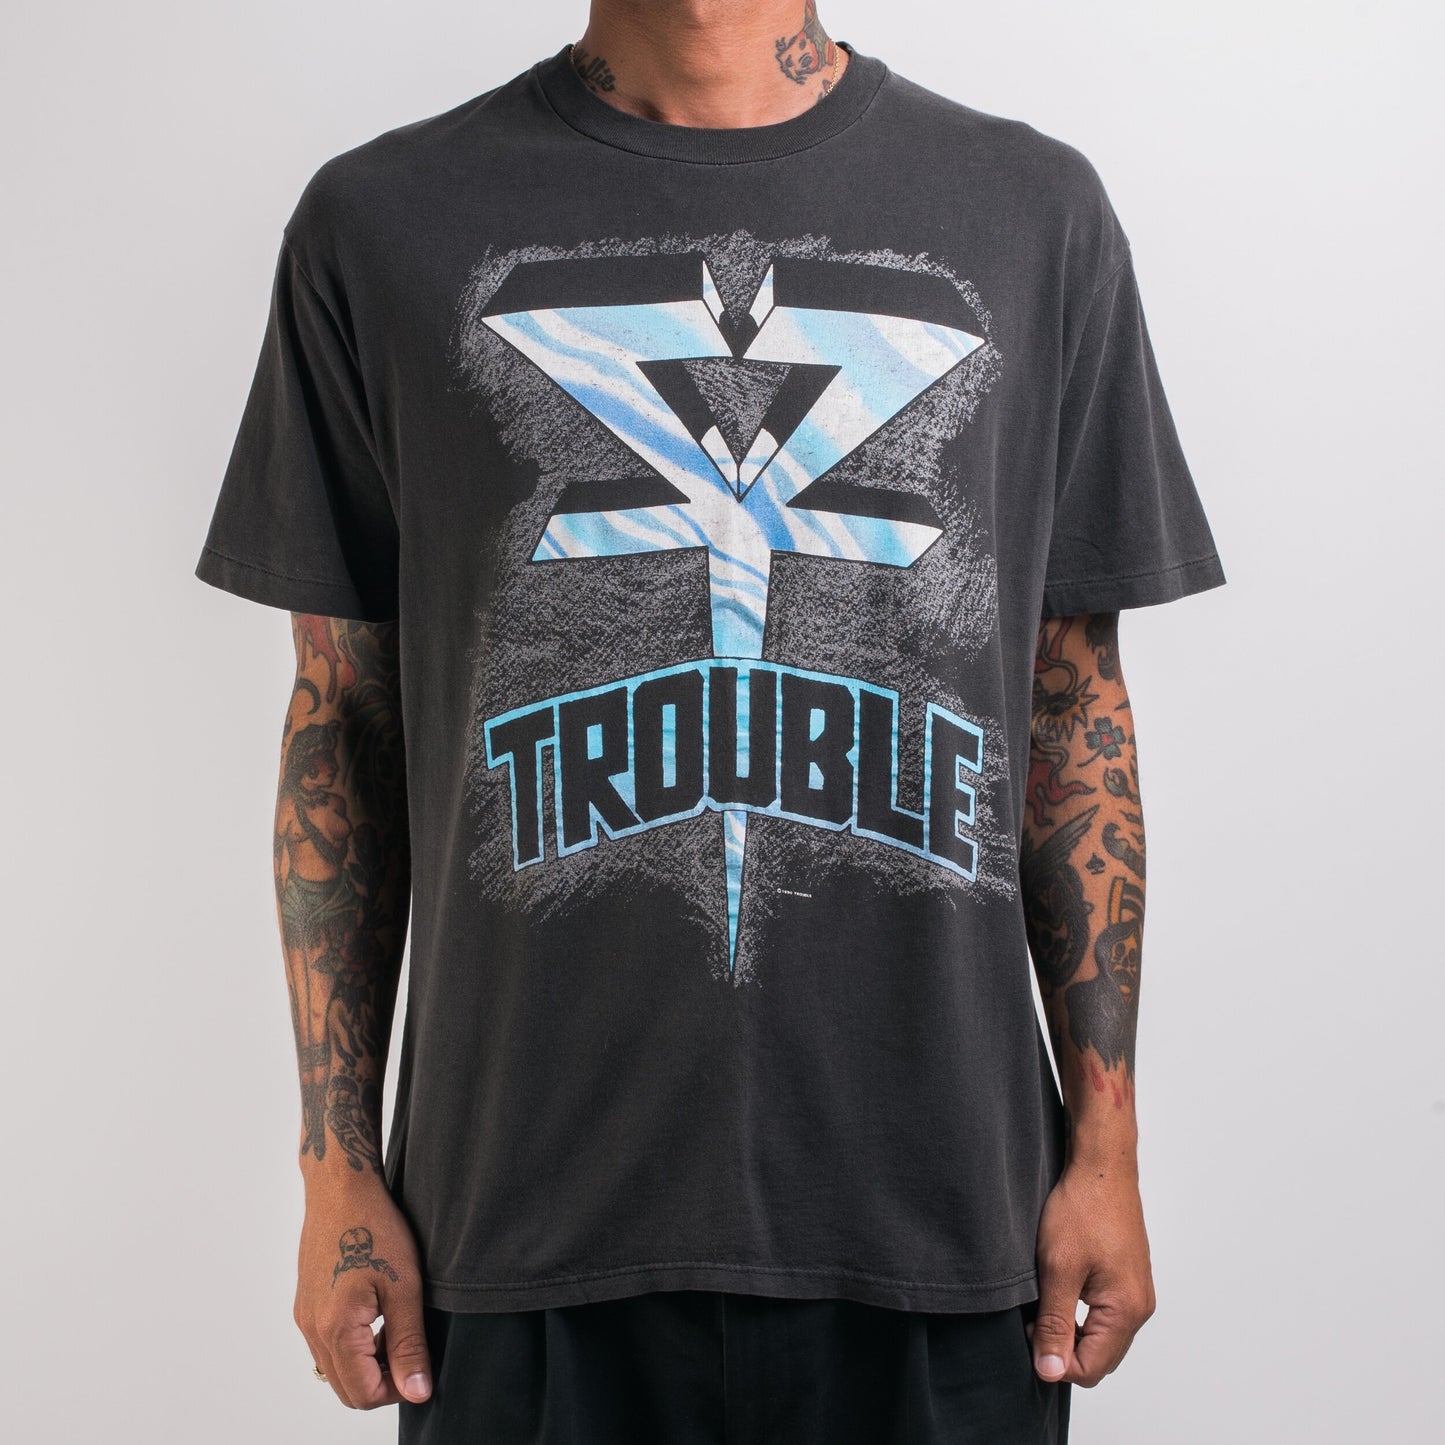 Vintage 1990 Trouble Tour T-Shirt